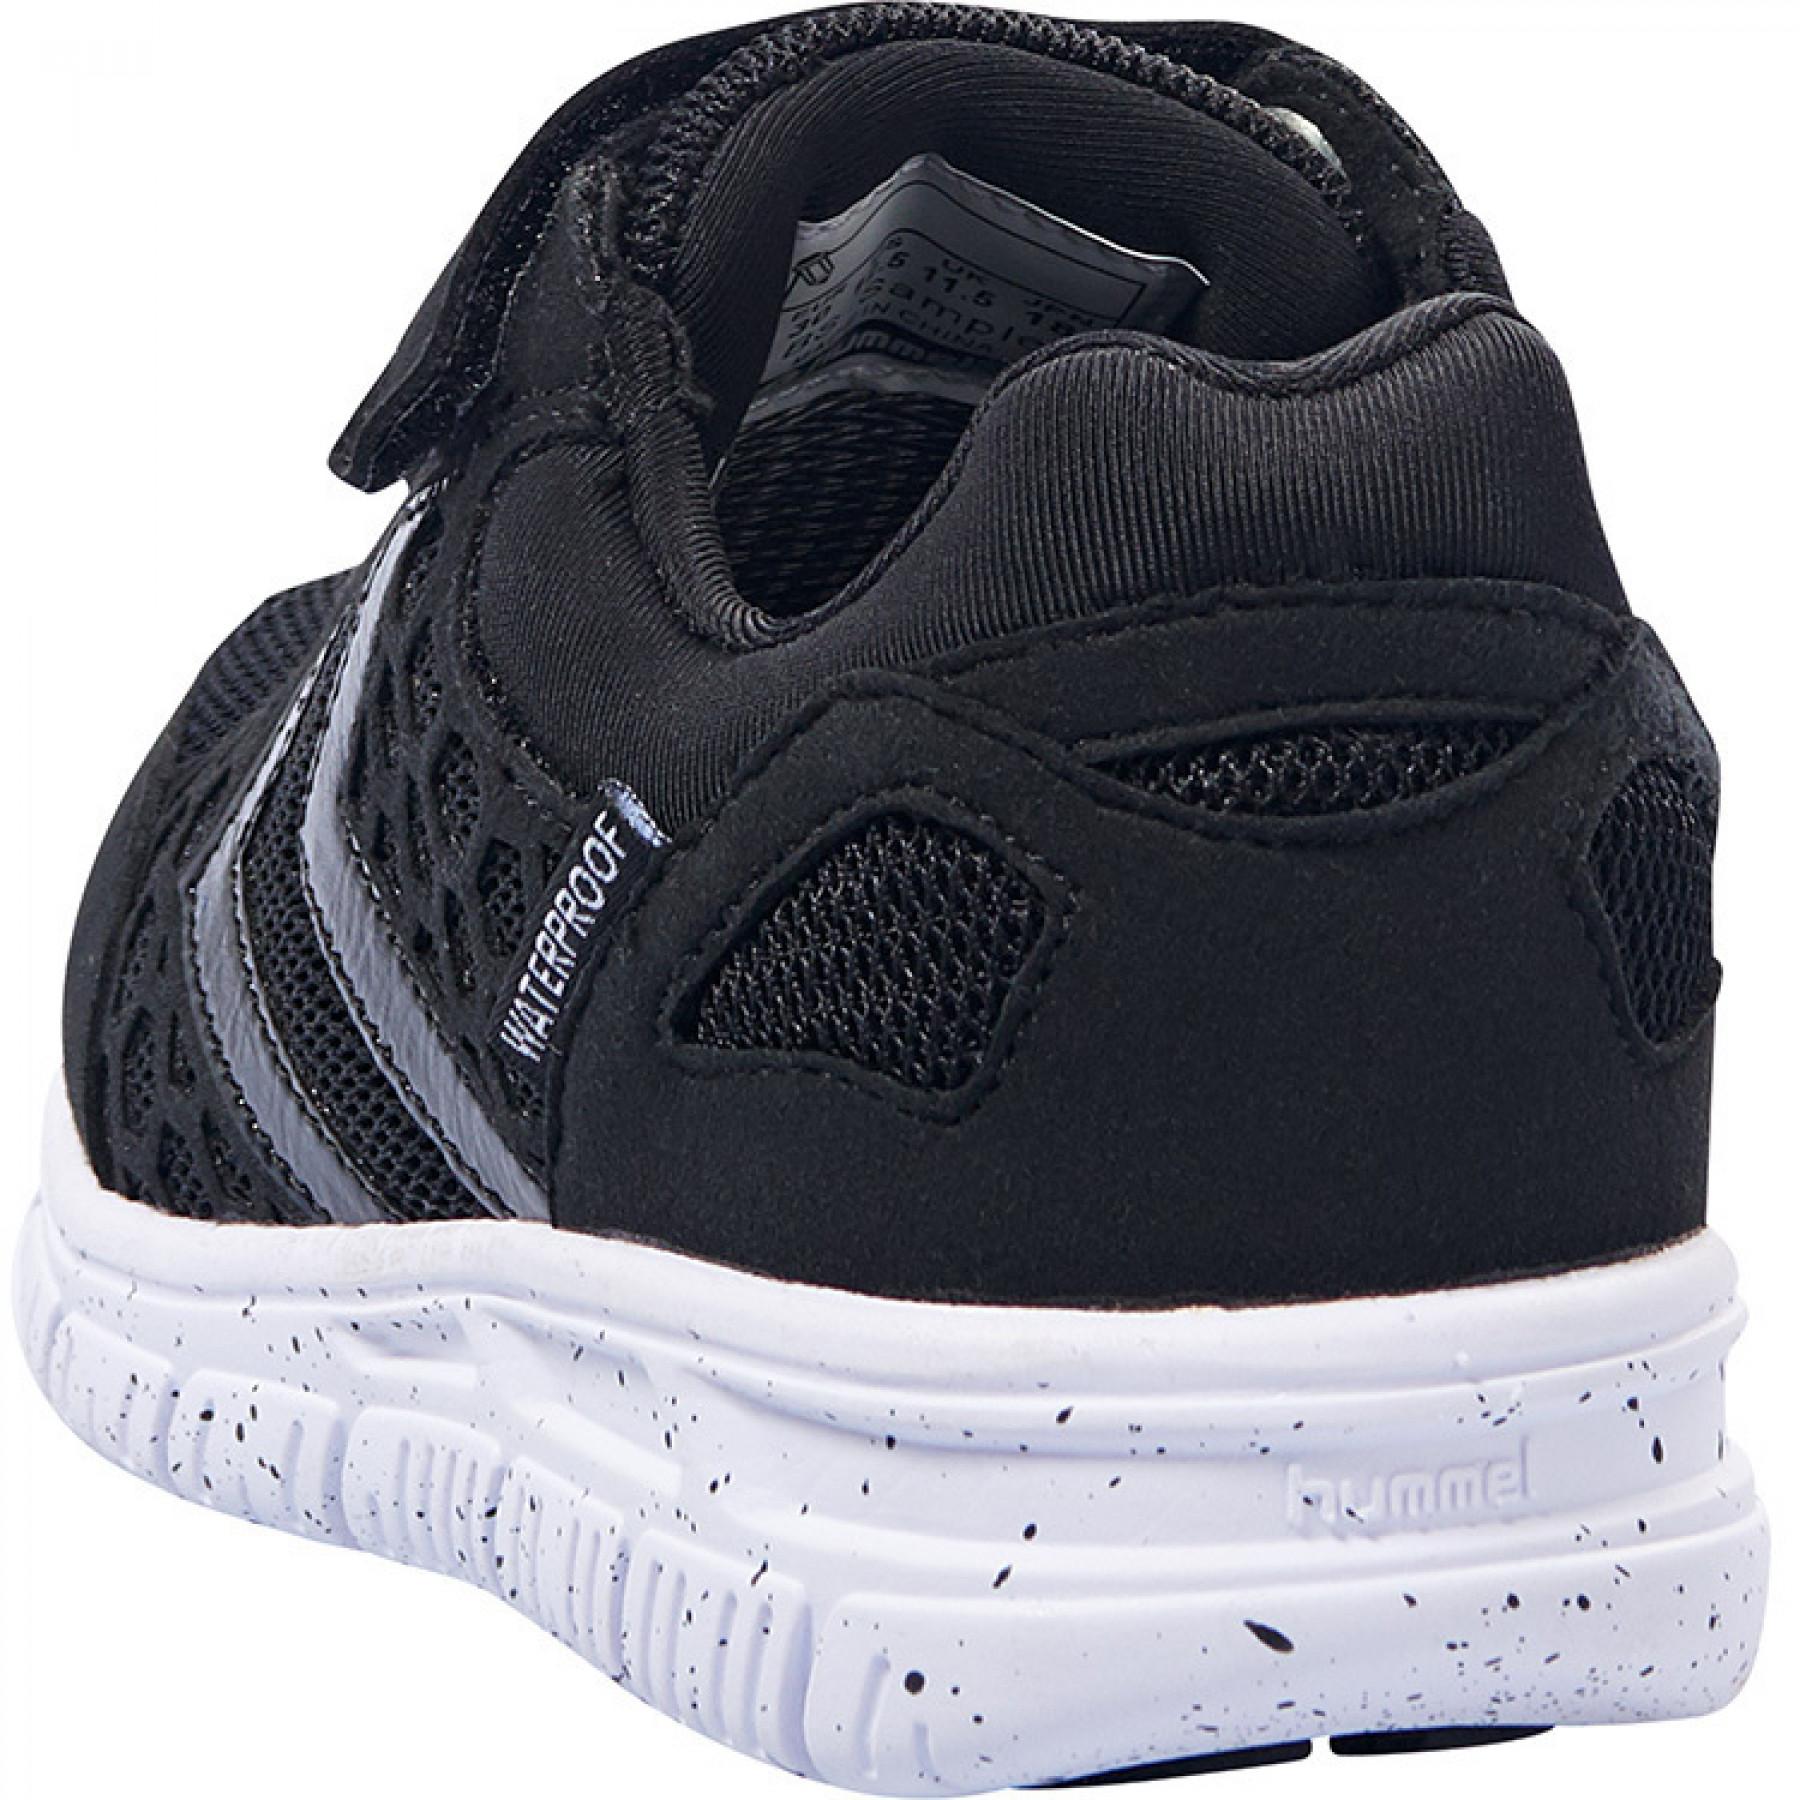 Children's sneakers Hummel Crosslite Weter hmlPRO of